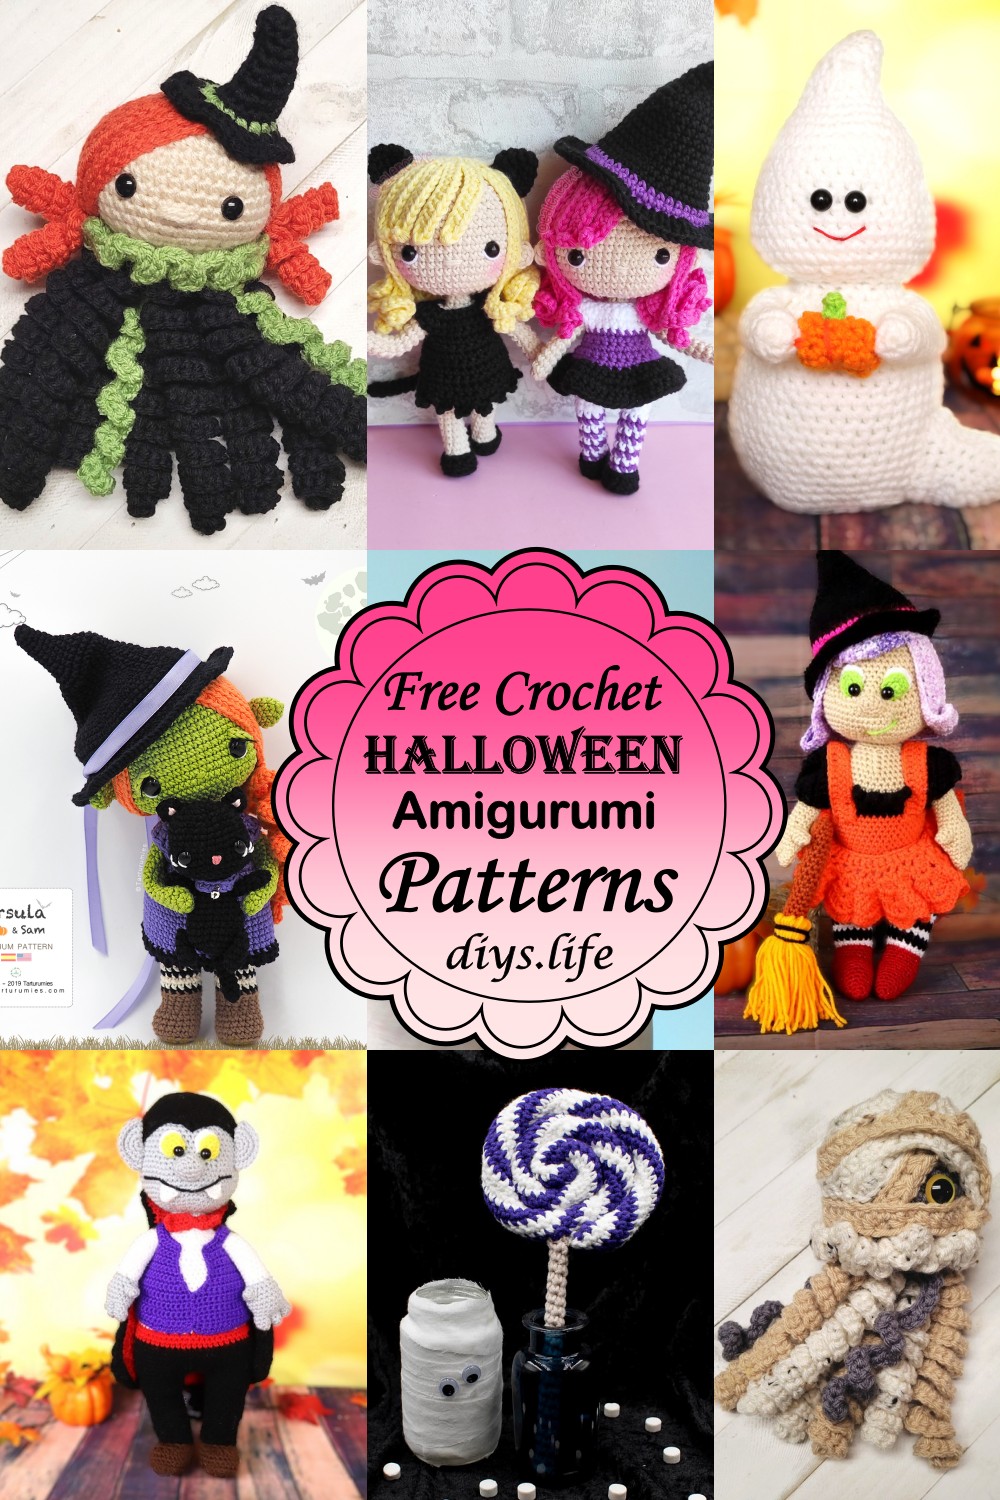 Crochet Halloween Amigurumi Patterns